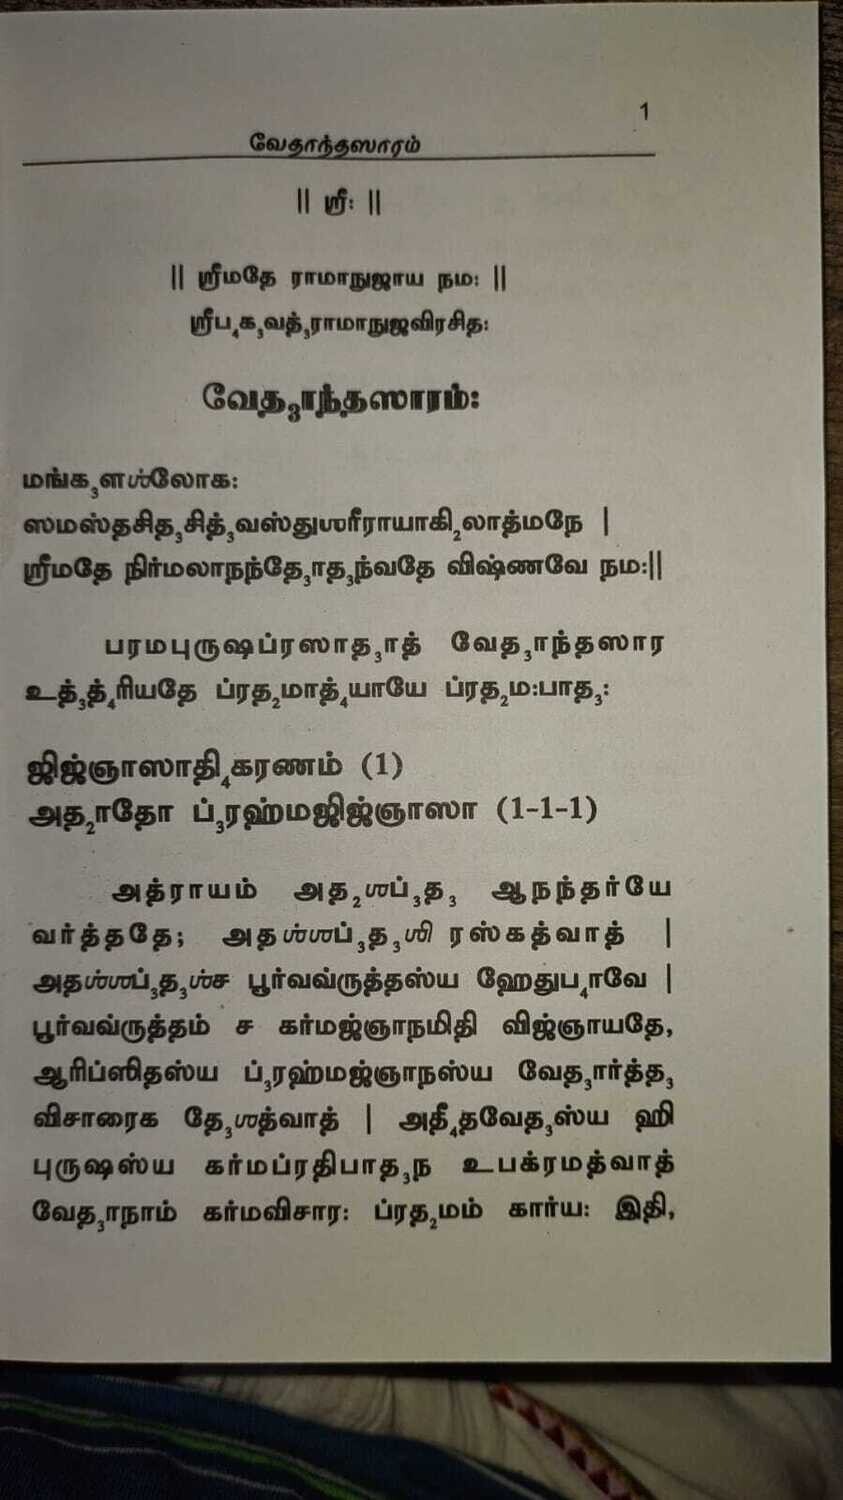 Printed Book - Vedanta / Vedantha Saram / Saaram - Moolam in Tamil
( in 2 Vols) ; வேதாந்த ஸாரம் , மூலம் தமிழில் , 2 புத்தகங்கள்